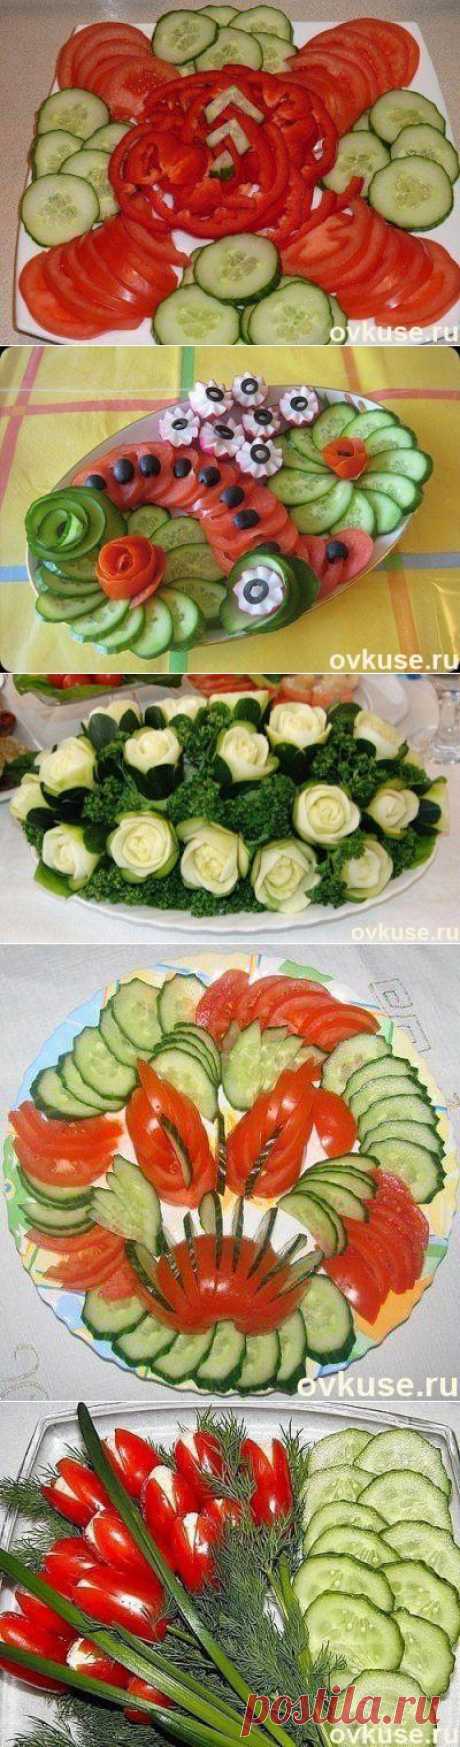 Как красиво подать овощи к столу - Простые рецепты Овкусе.ру